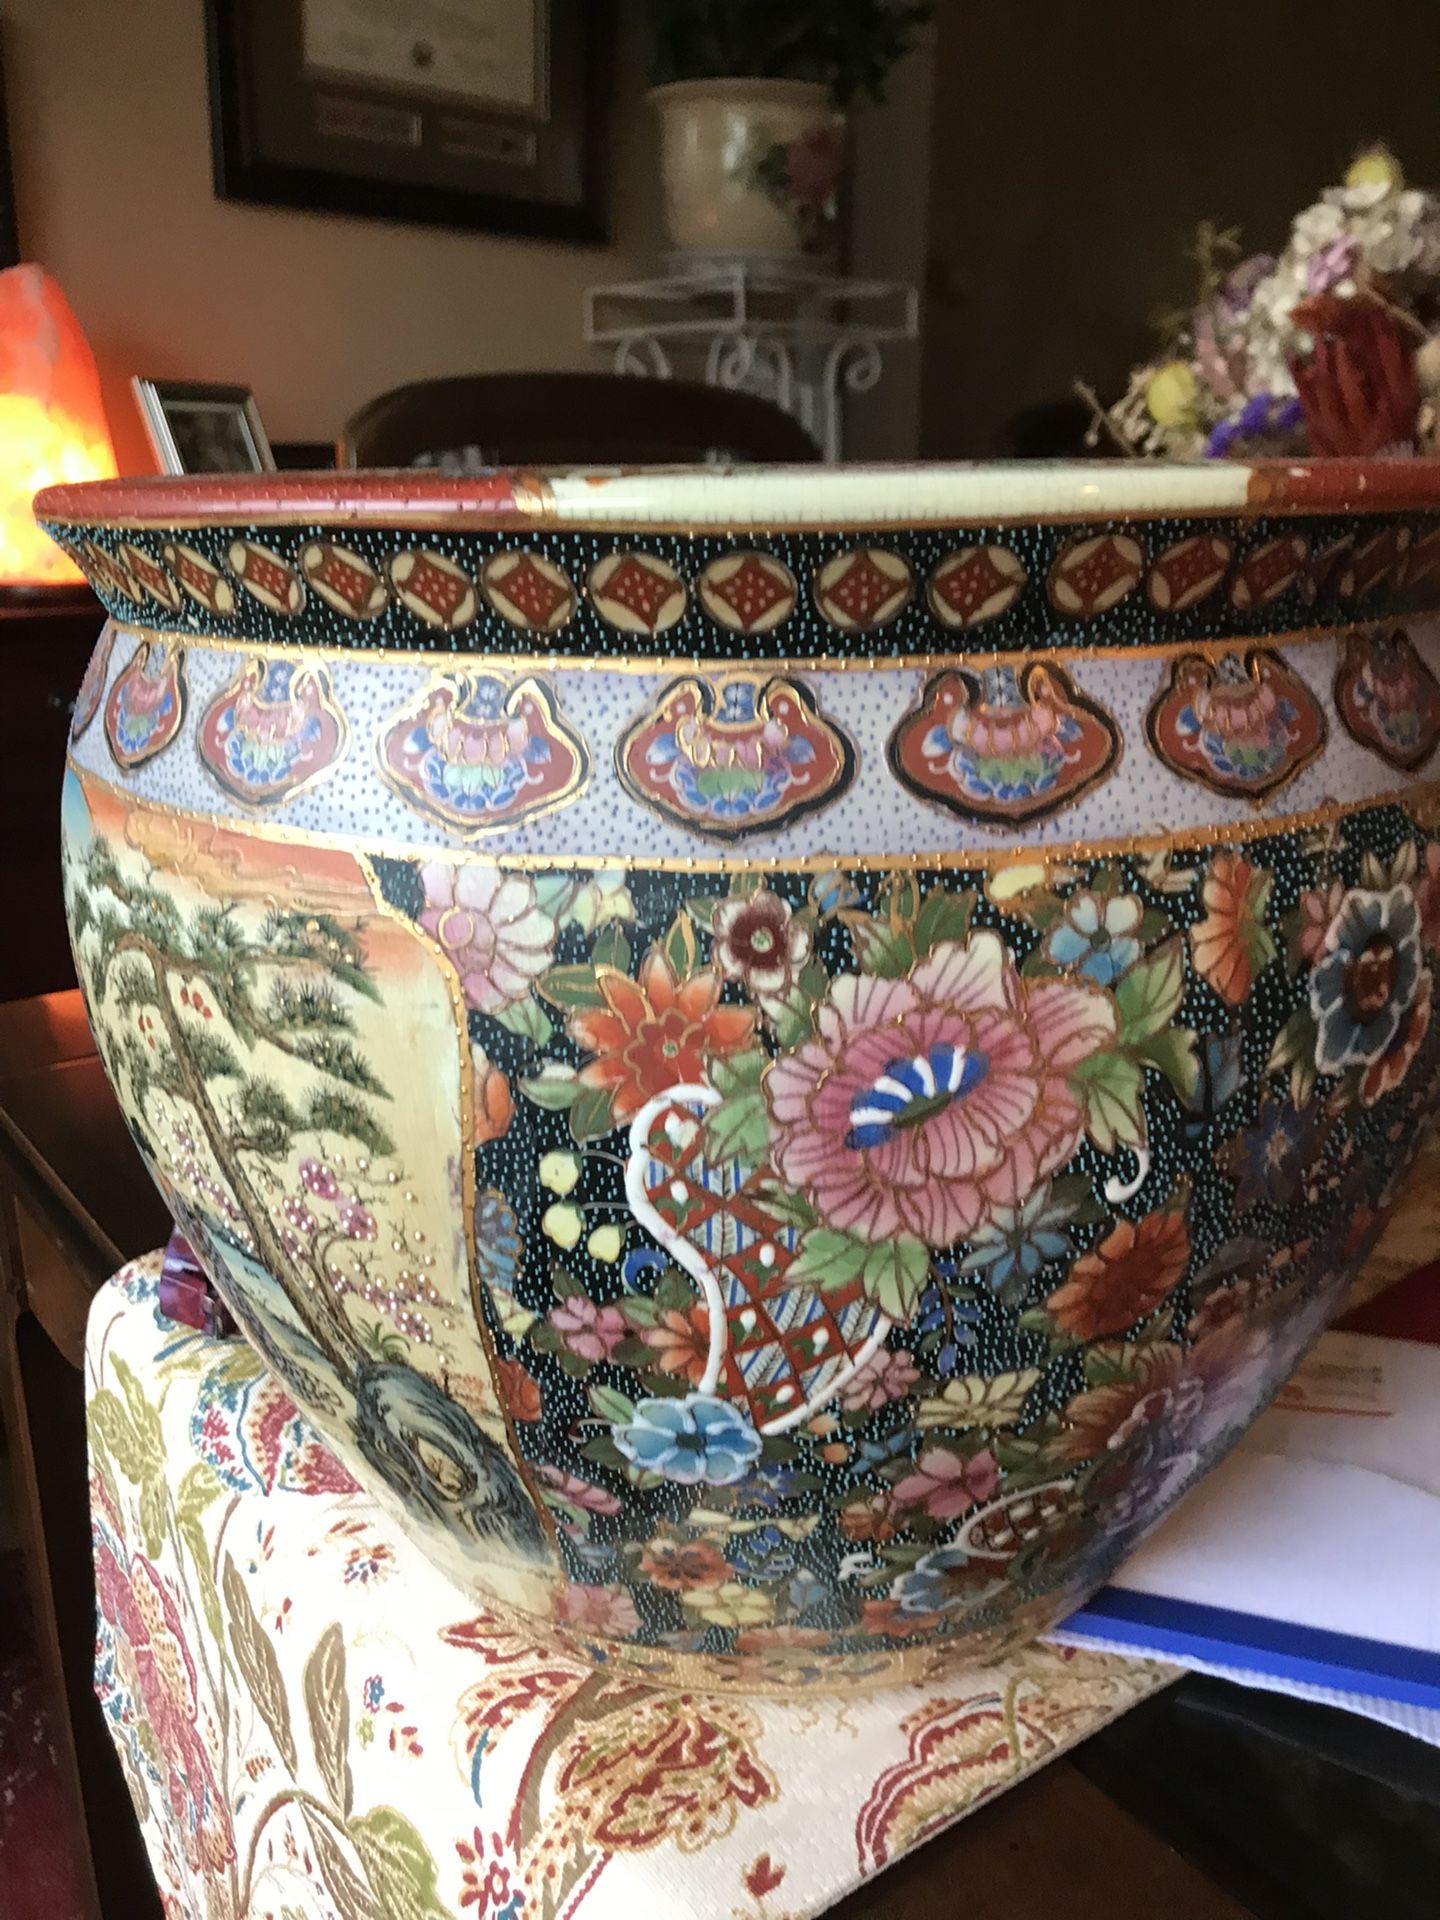 Oriental Flower Pot